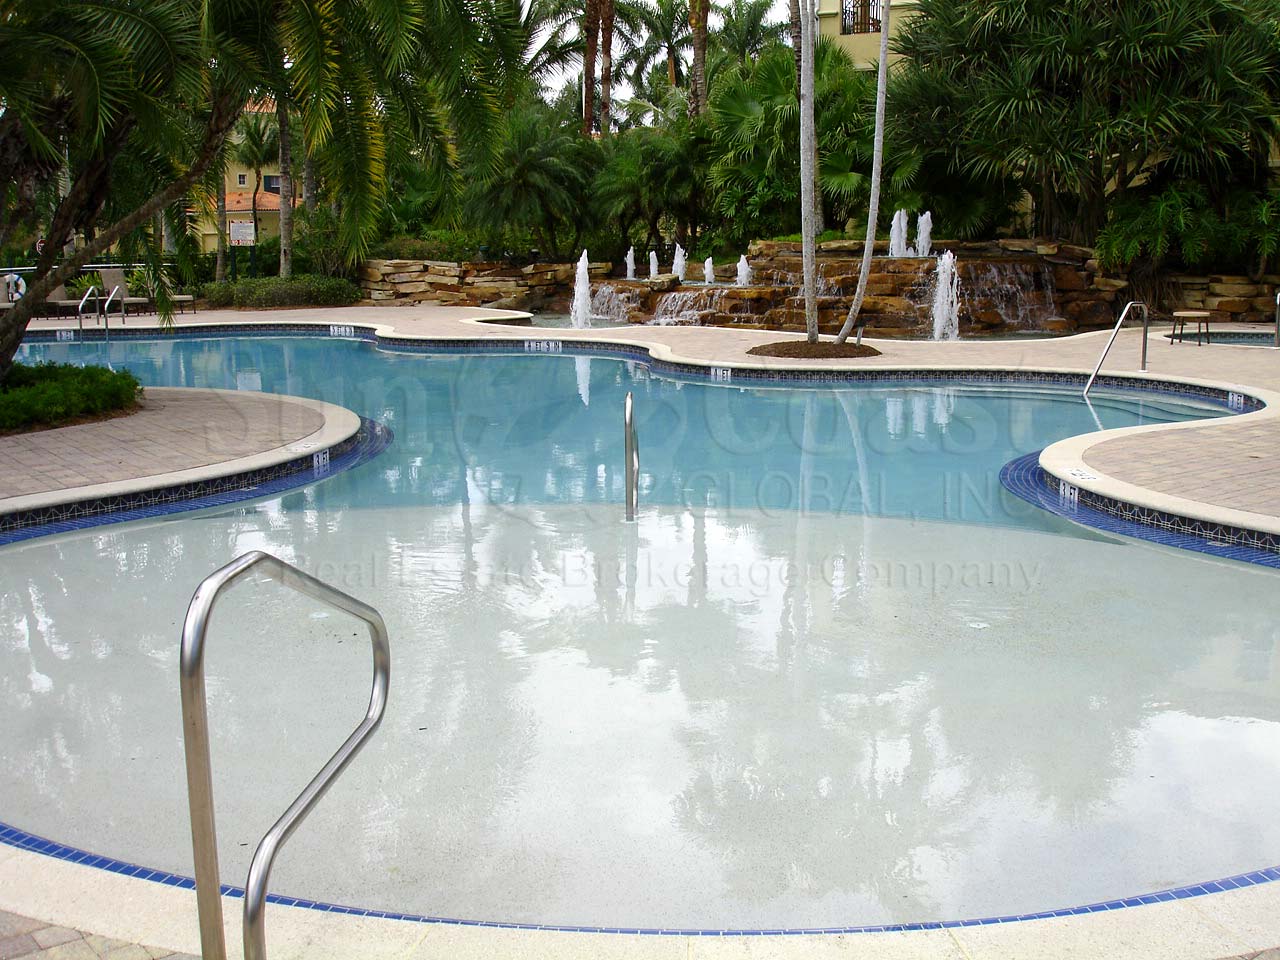 Castillo Community Pool